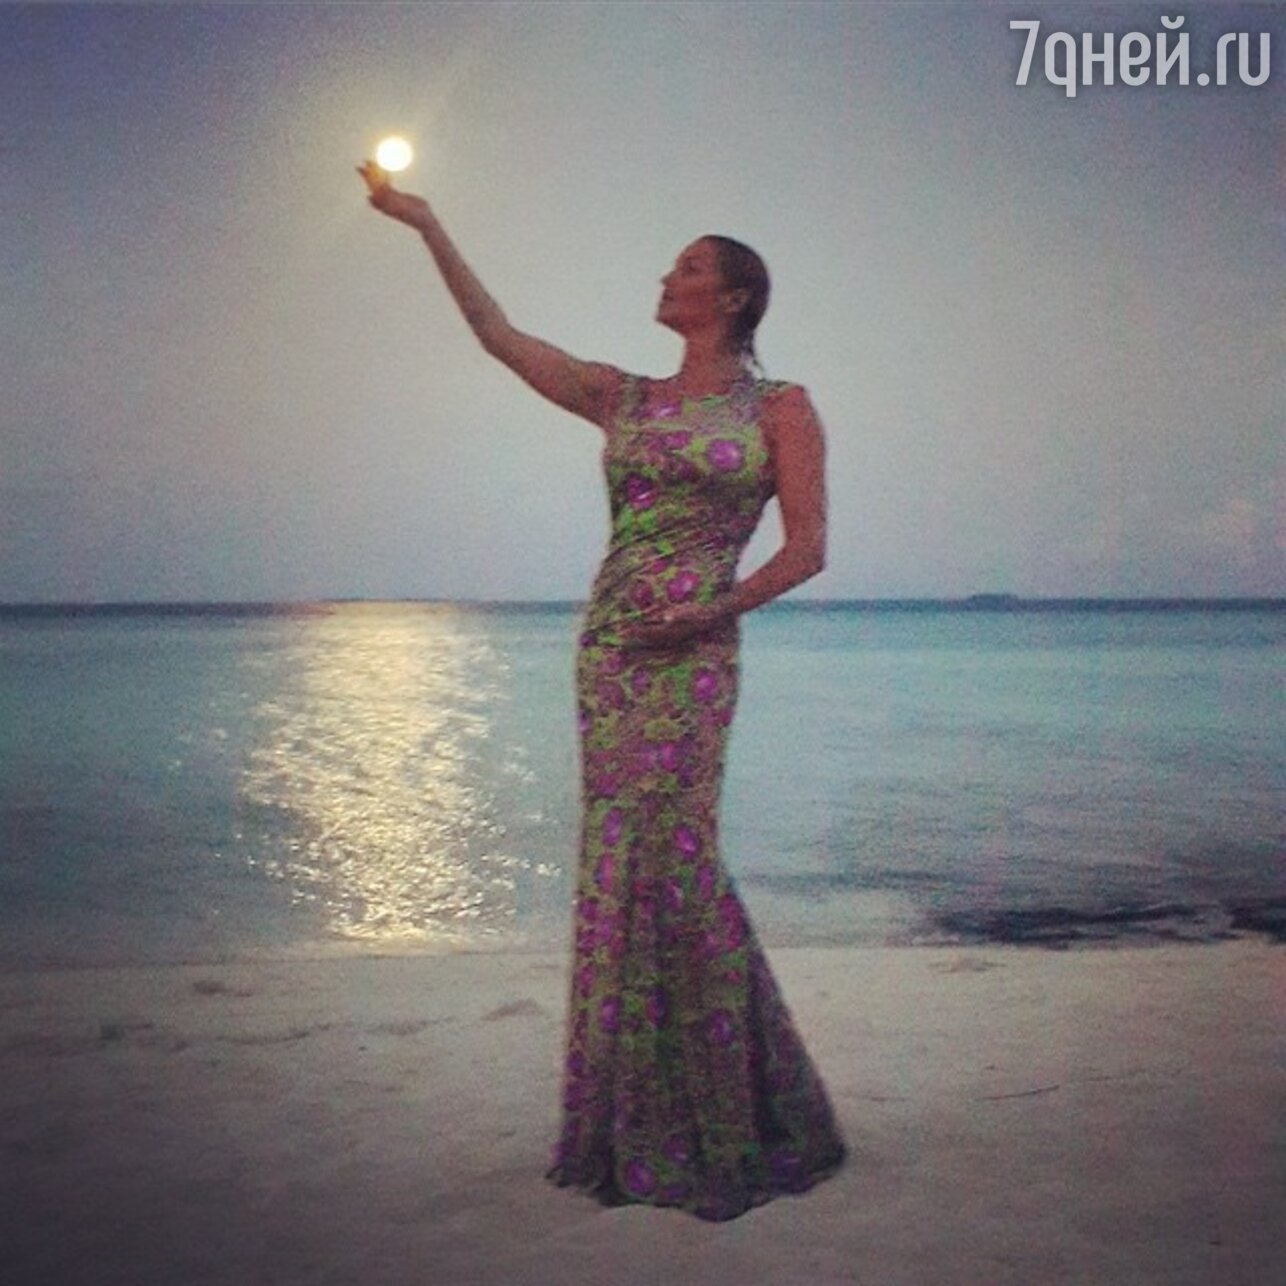 Новая фотосессия Анастасия Волочкова отдыхает на Мальдивах 7Днейру